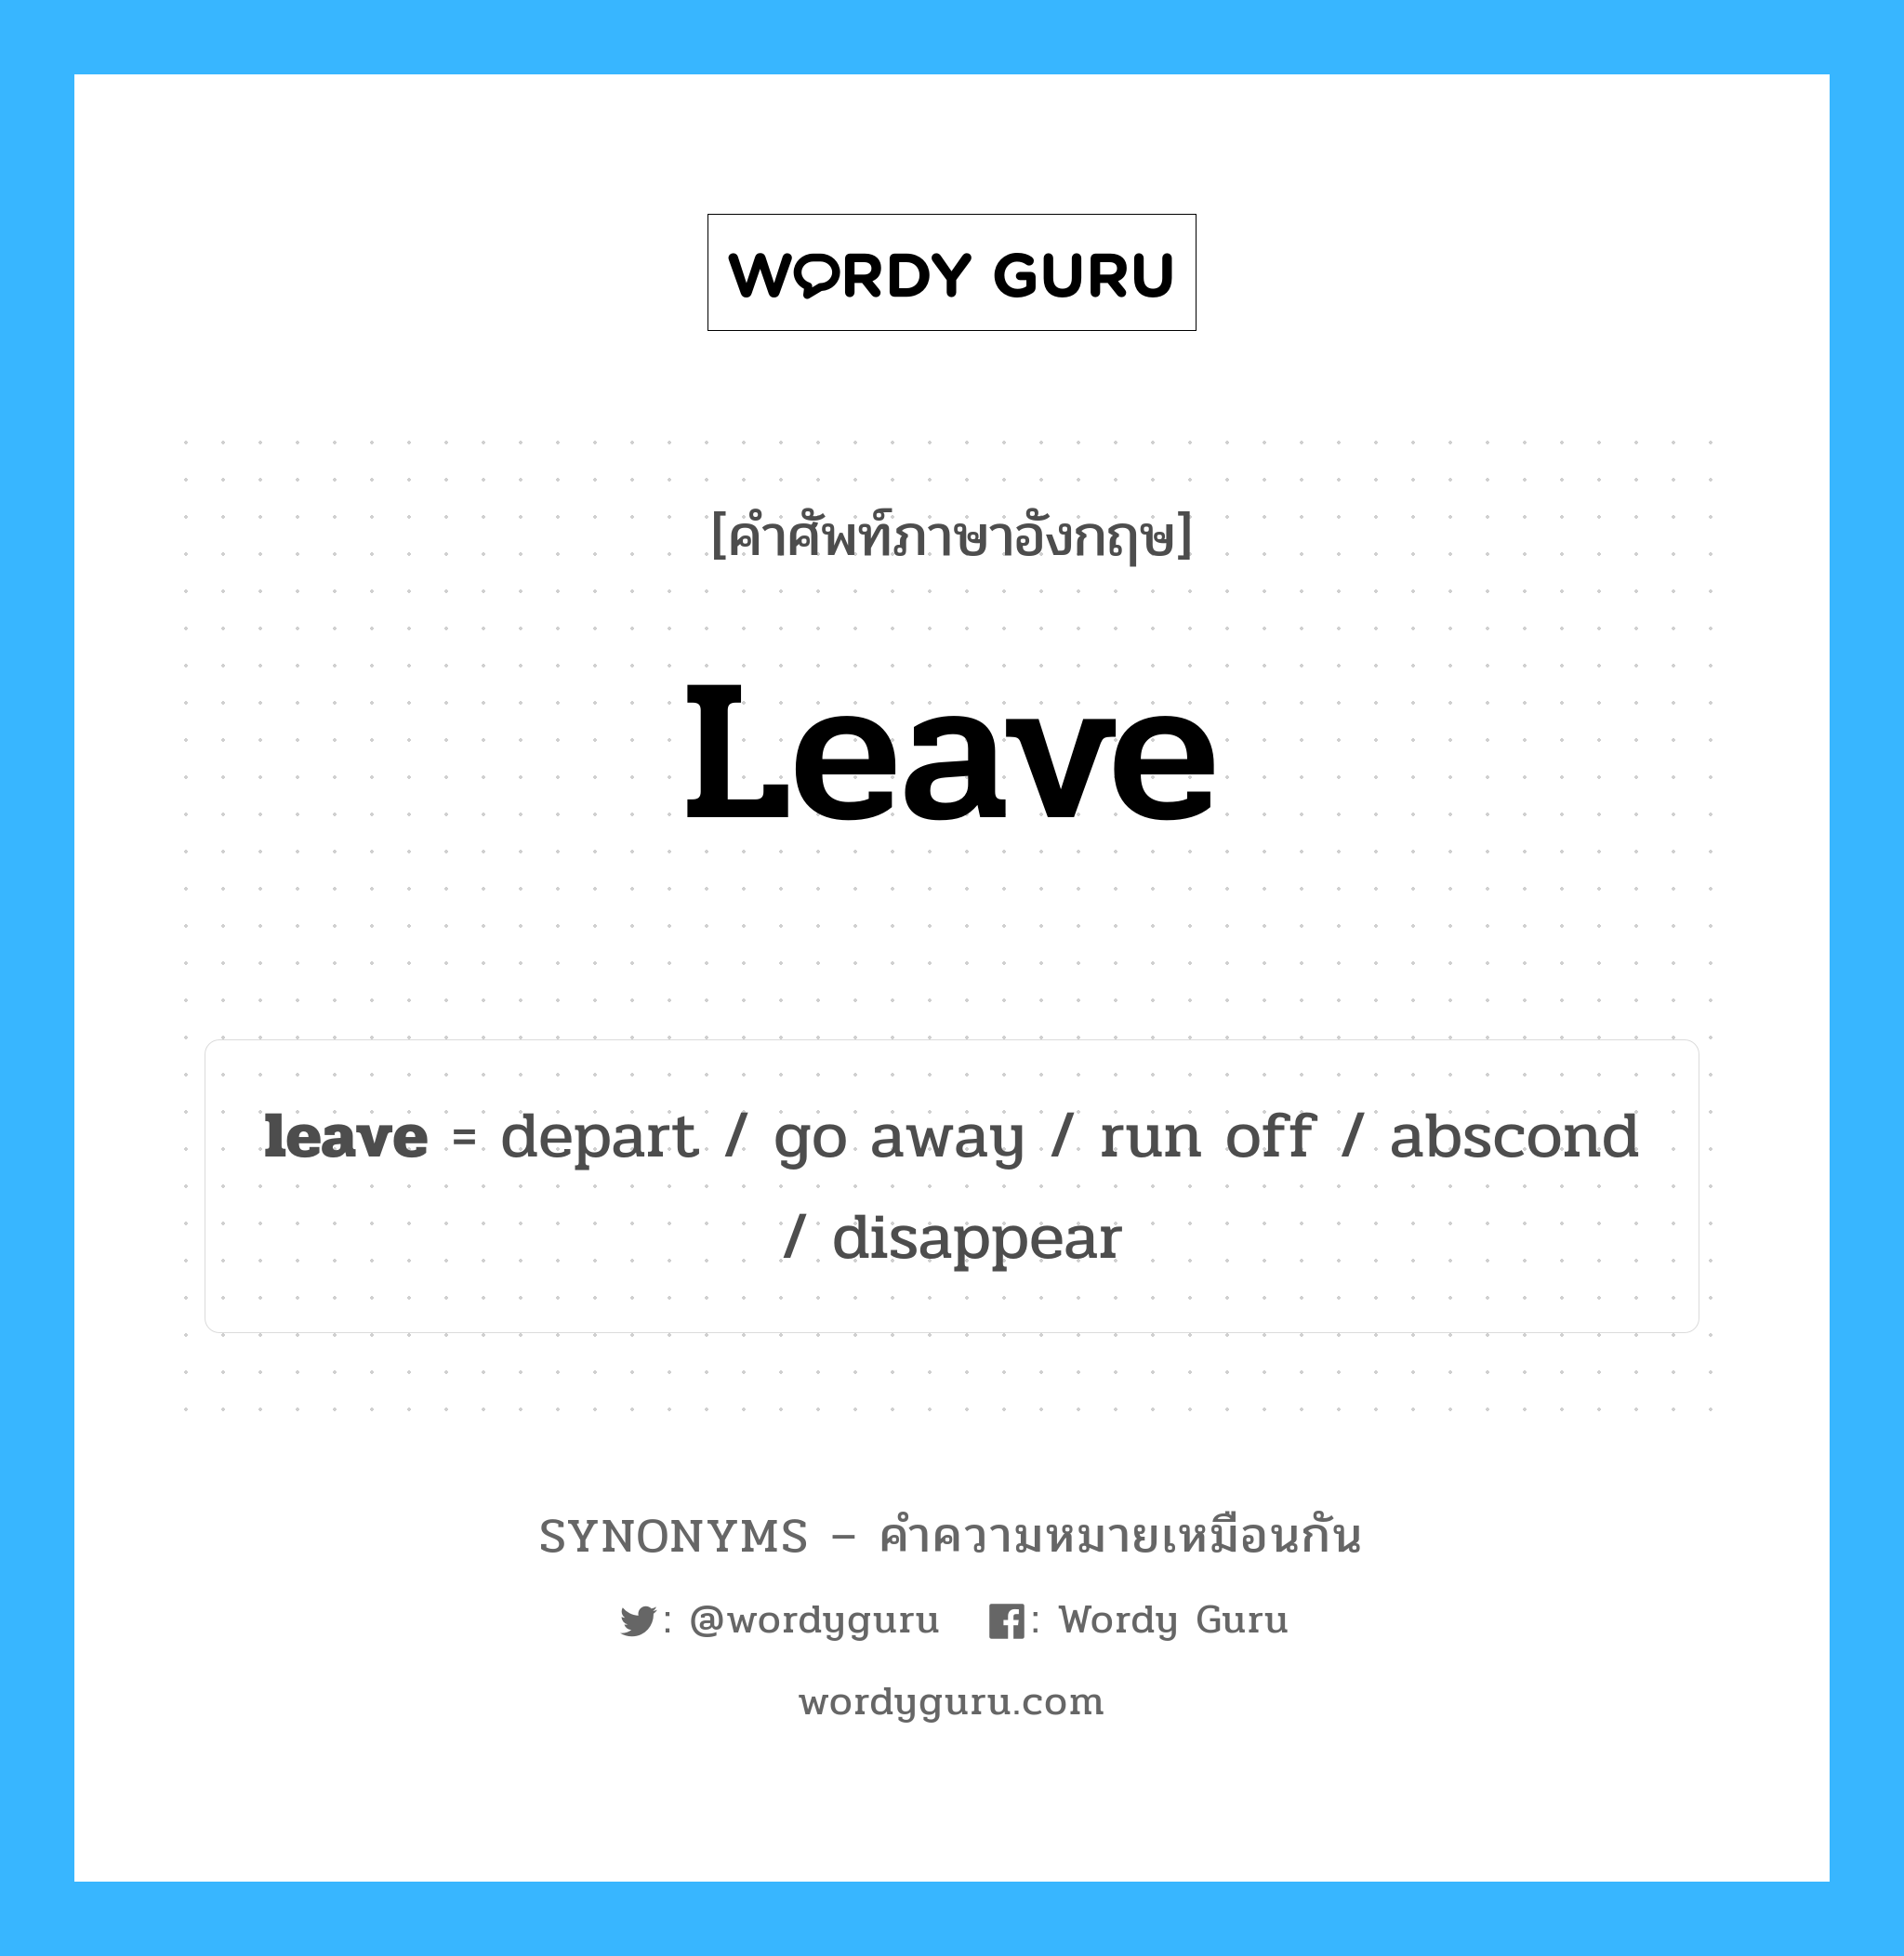 leave เป็นหนึ่งใน depart และมีคำอื่น ๆ อีกดังนี้, คำศัพท์ภาษาอังกฤษ leave ความหมายคล้ายกันกับ depart แปลว่า ออกเดินทาง หมวด depart